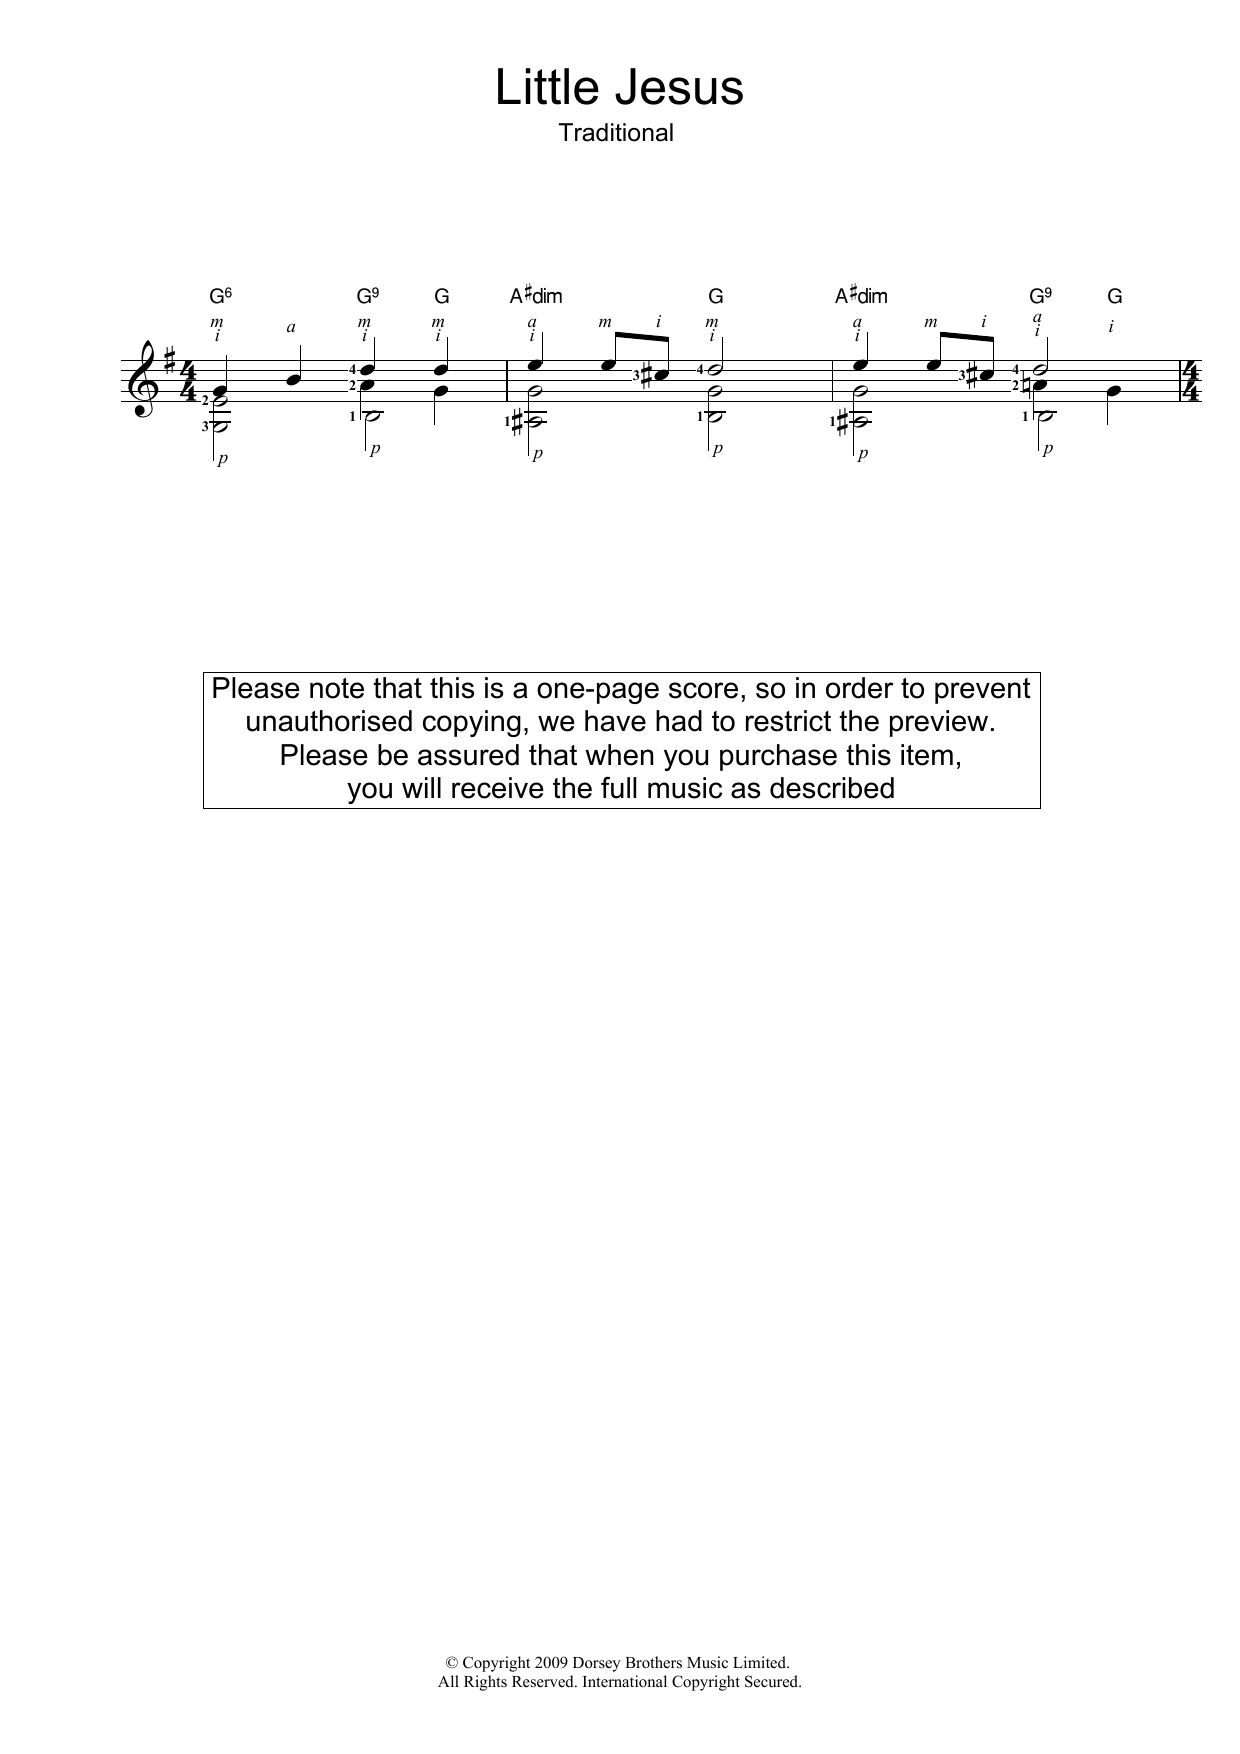 Traditional Carol Little Jesus (Rocking Carol) Sheet Music Notes & Chords for Guitar Chords/Lyrics - Download or Print PDF